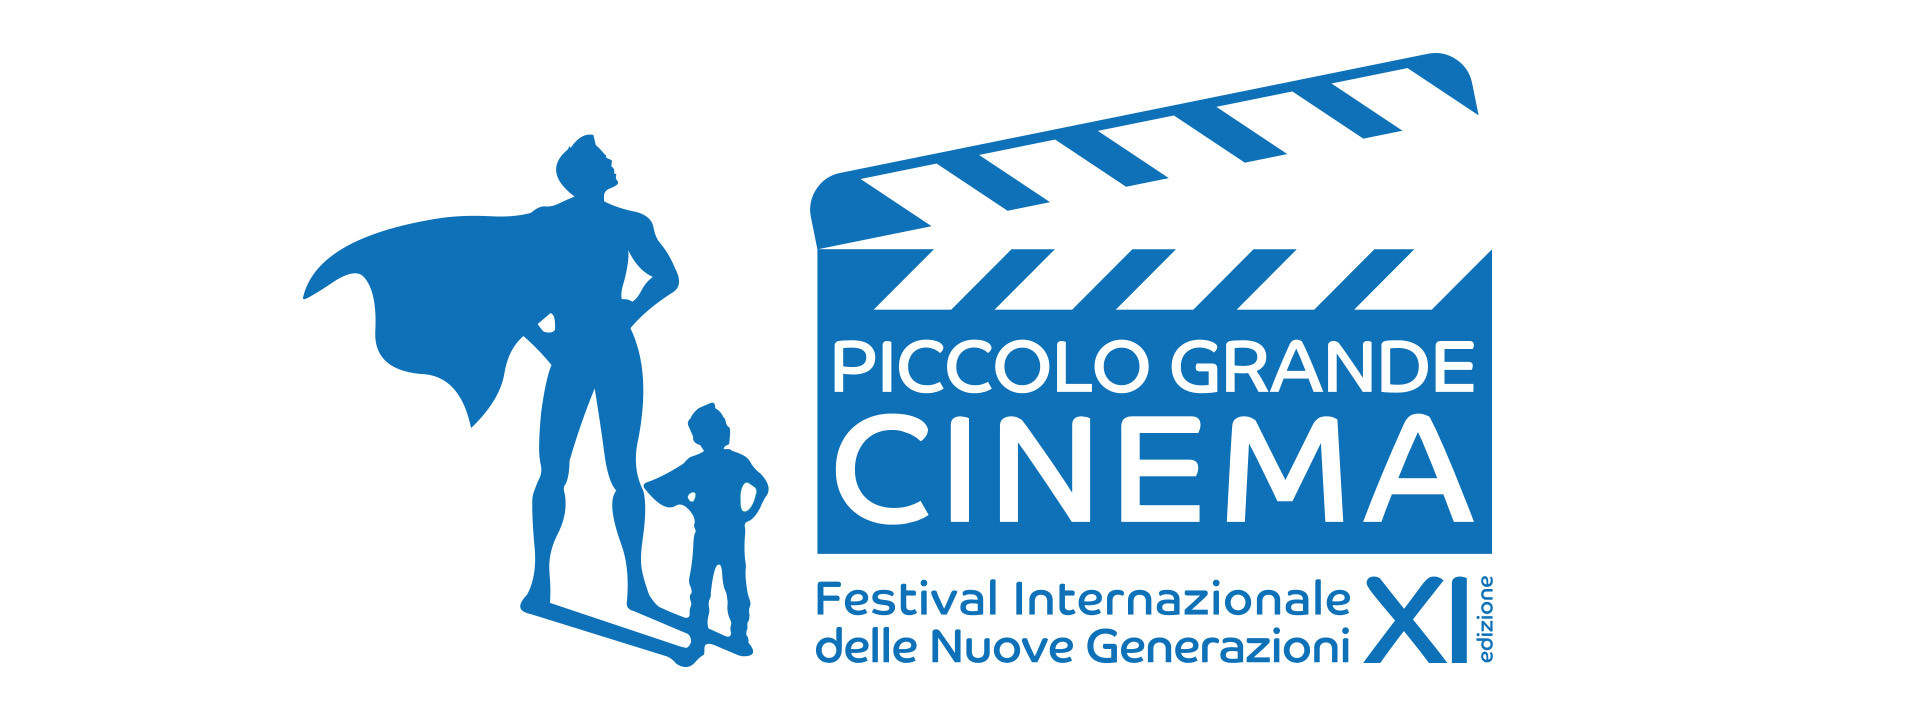 PICCOLO GRANDE CINEMA XI